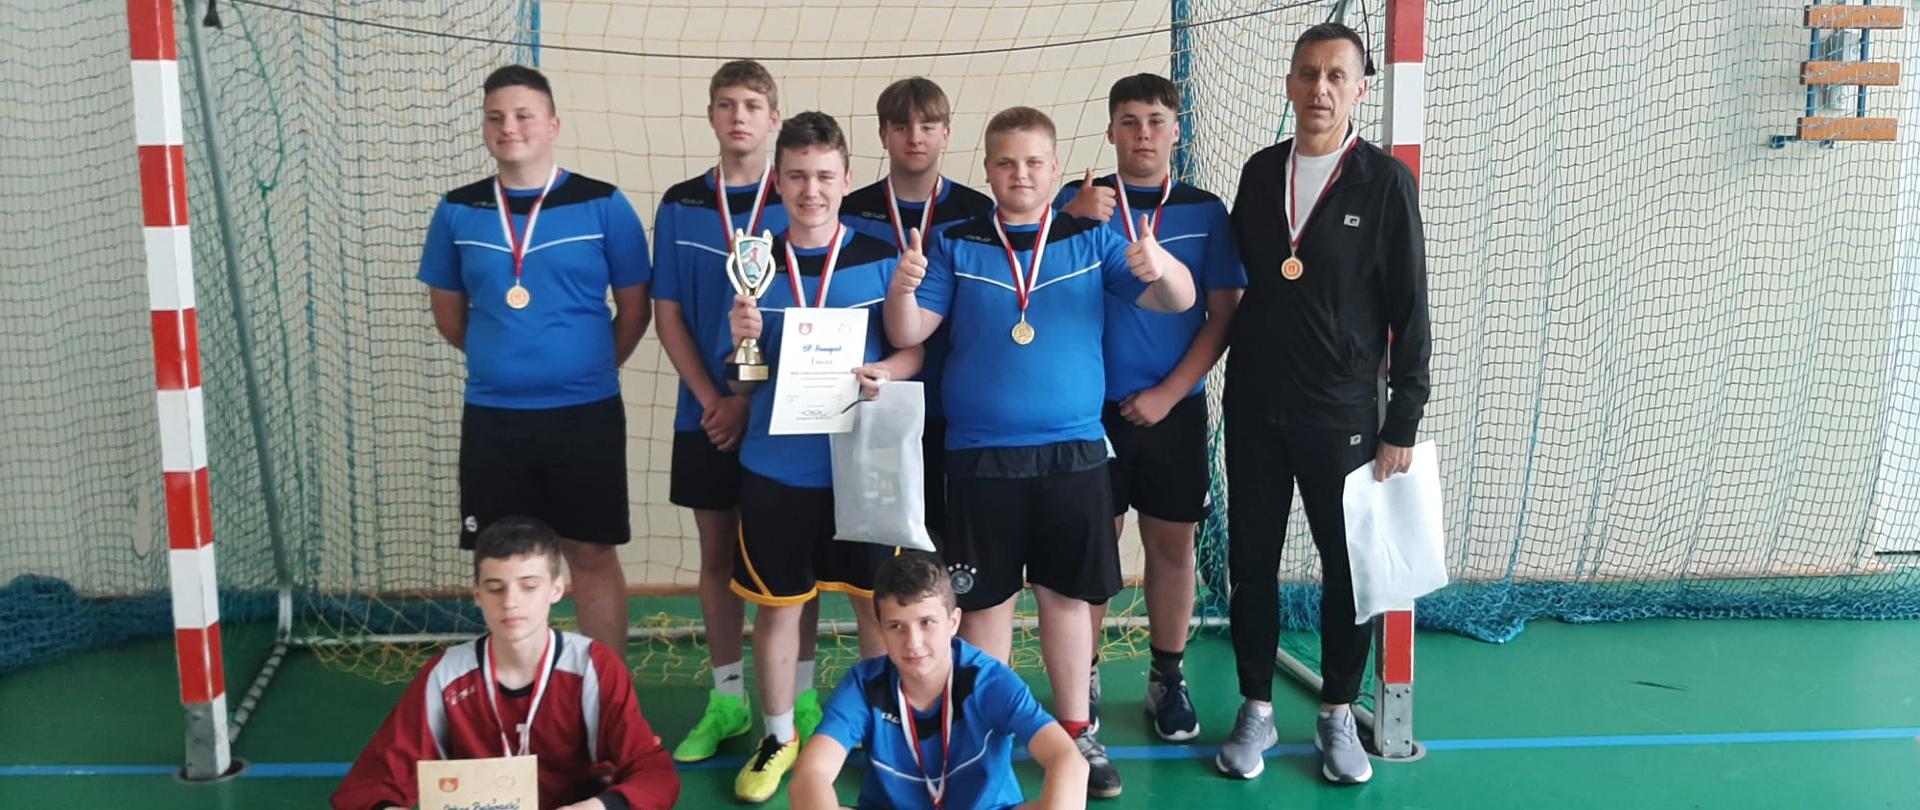 Zwycięska drużyna PSP Annopol wraz z opiekunem prezentująca dyplomy i medale